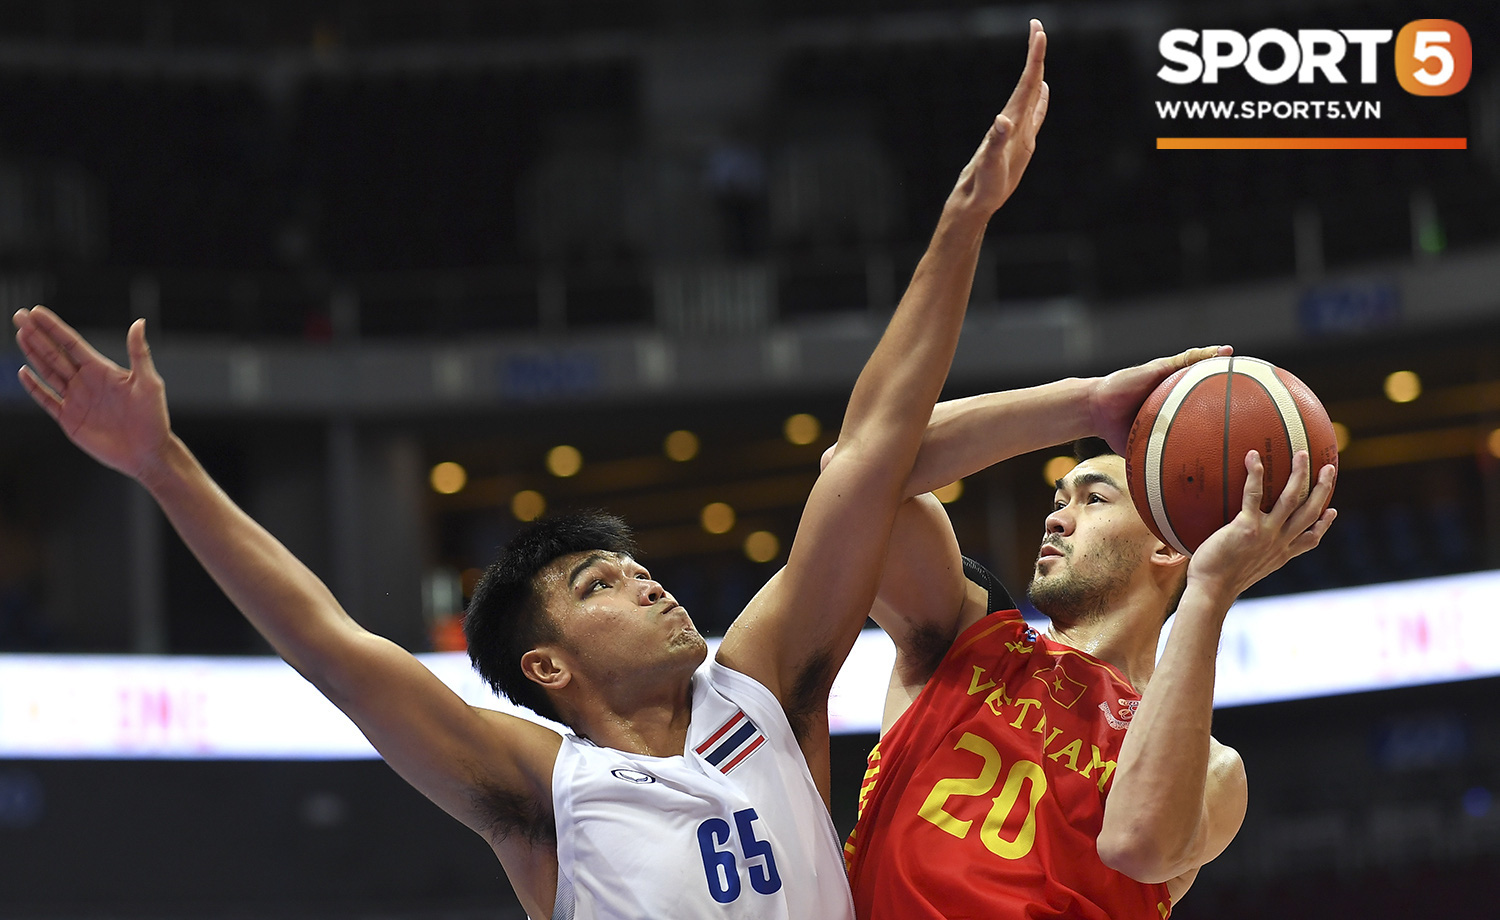 Tan giấc mộng vàng ở SEA Games 30, tuyển bóng rổ Việt Nam hướng tới tấm huy chương đồng thứ 2 - Ảnh 7.